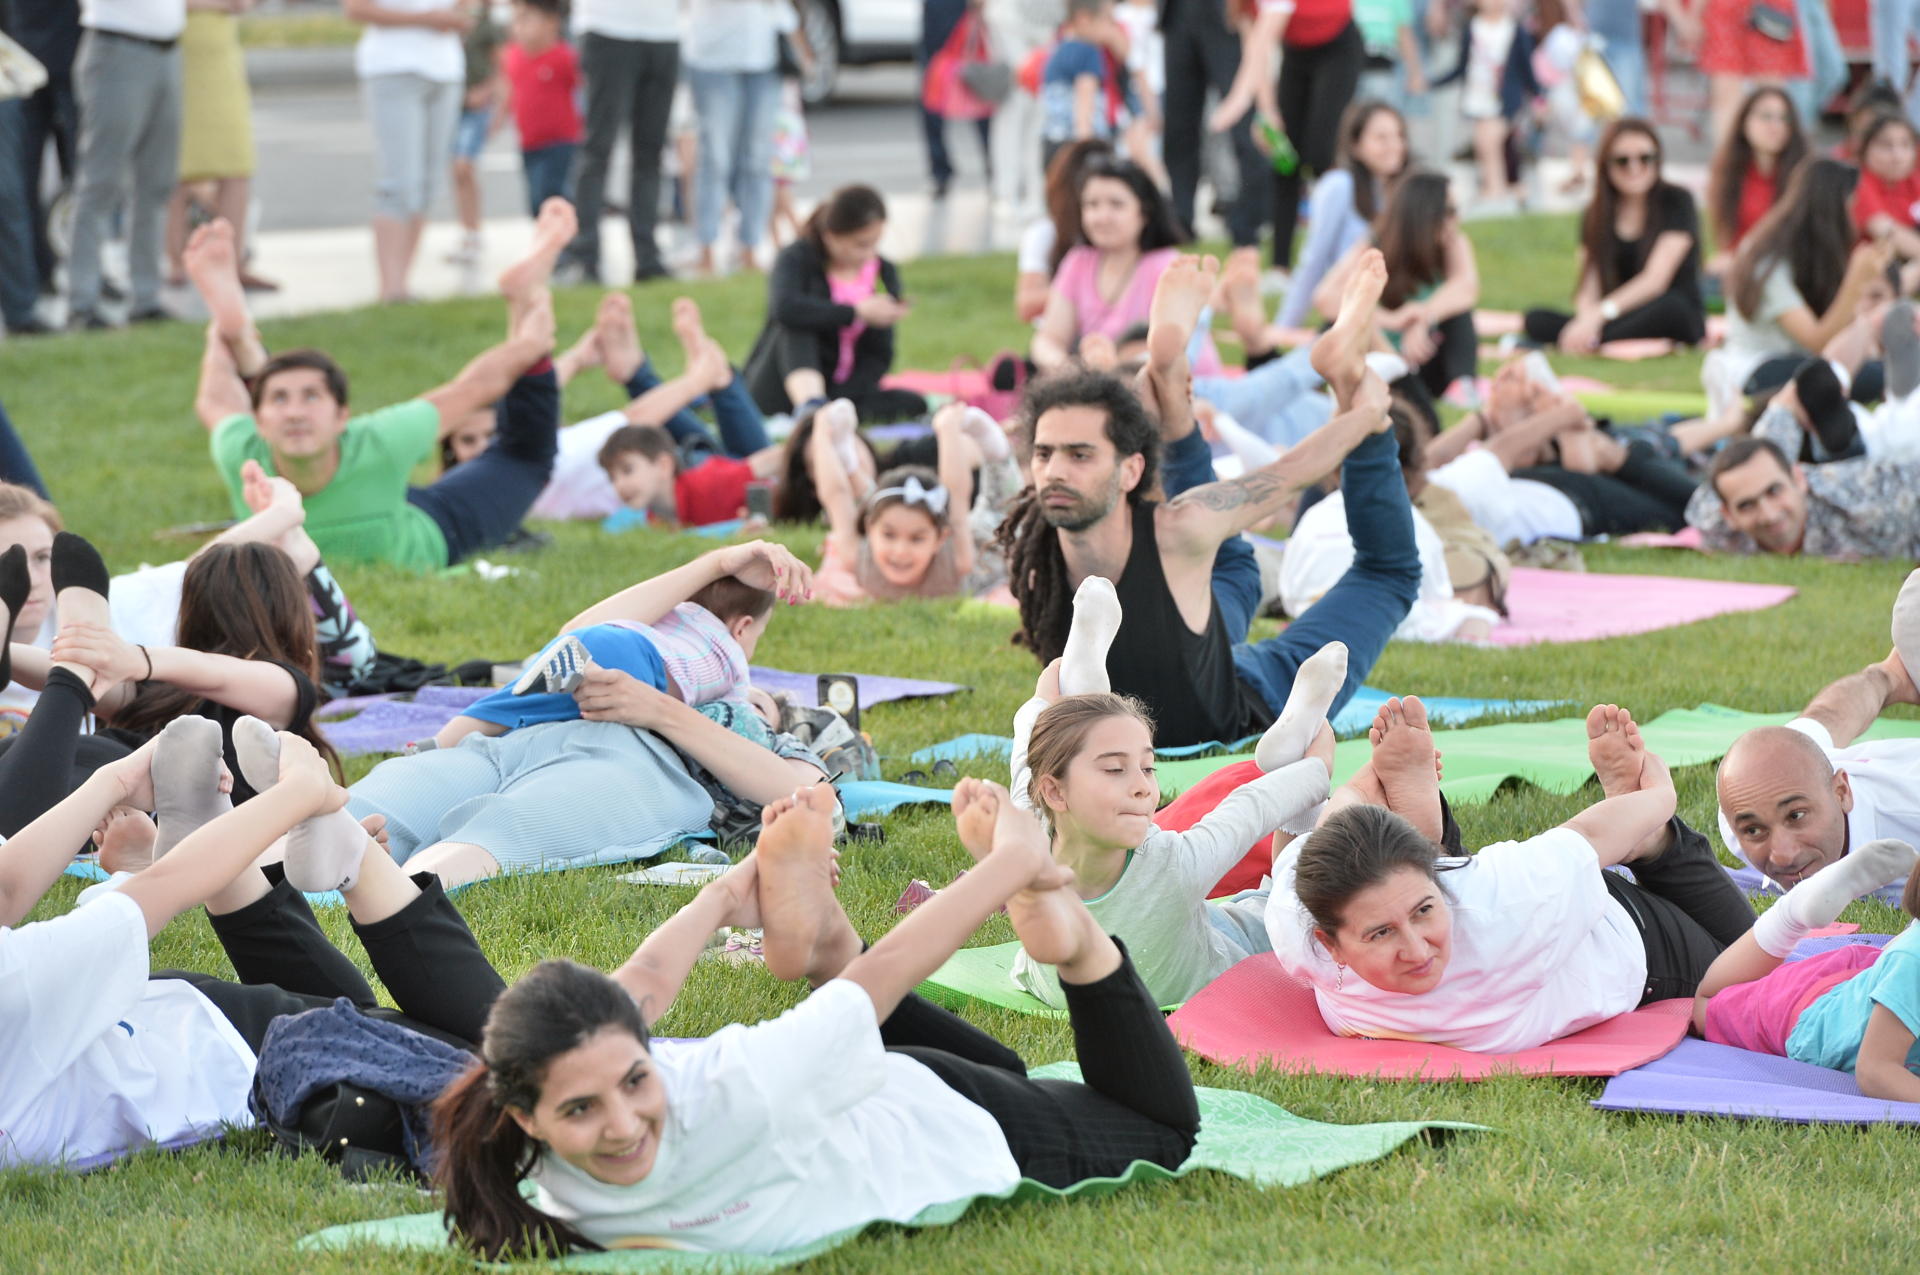 Heydər Əliyev Mərkəzinin parkında Beynəlxalq yoqa günü ilə bağlı yoqa məşğələsi keçirilib (FOTO)